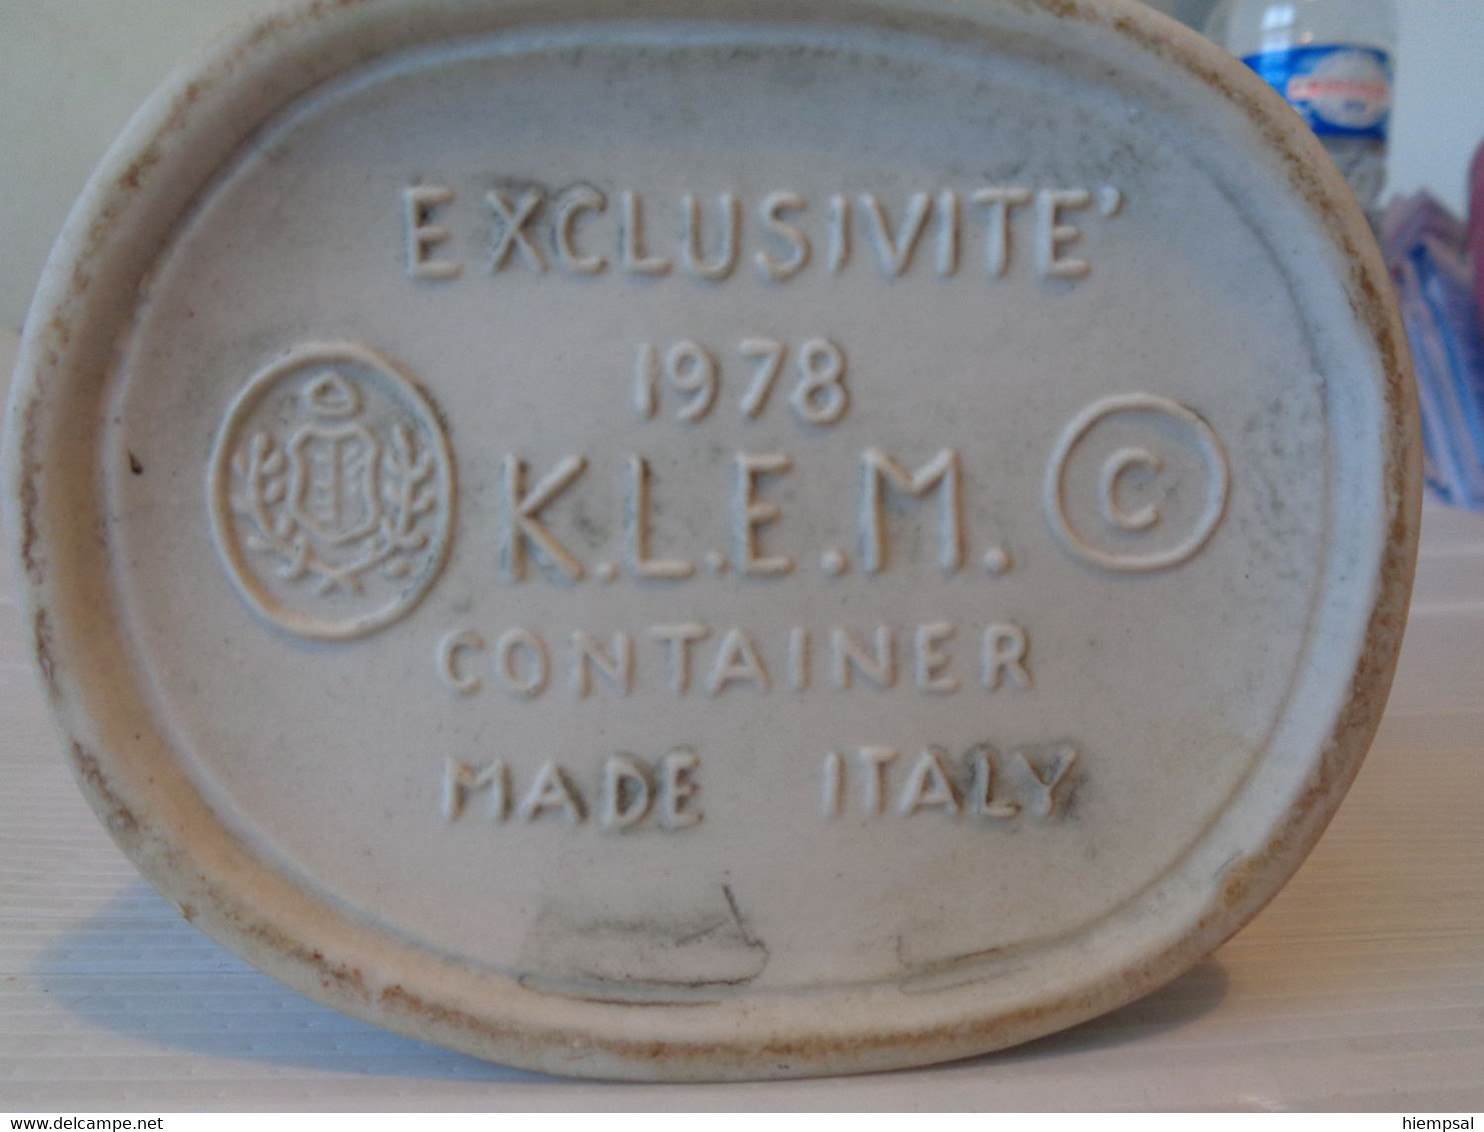 Rès Belle Bouteille Pour  Liqueurs De La Marque .K .L .E .M  MADE ITALY EXCLUSIVITE  1978  Ht  31 Cms - Spirits